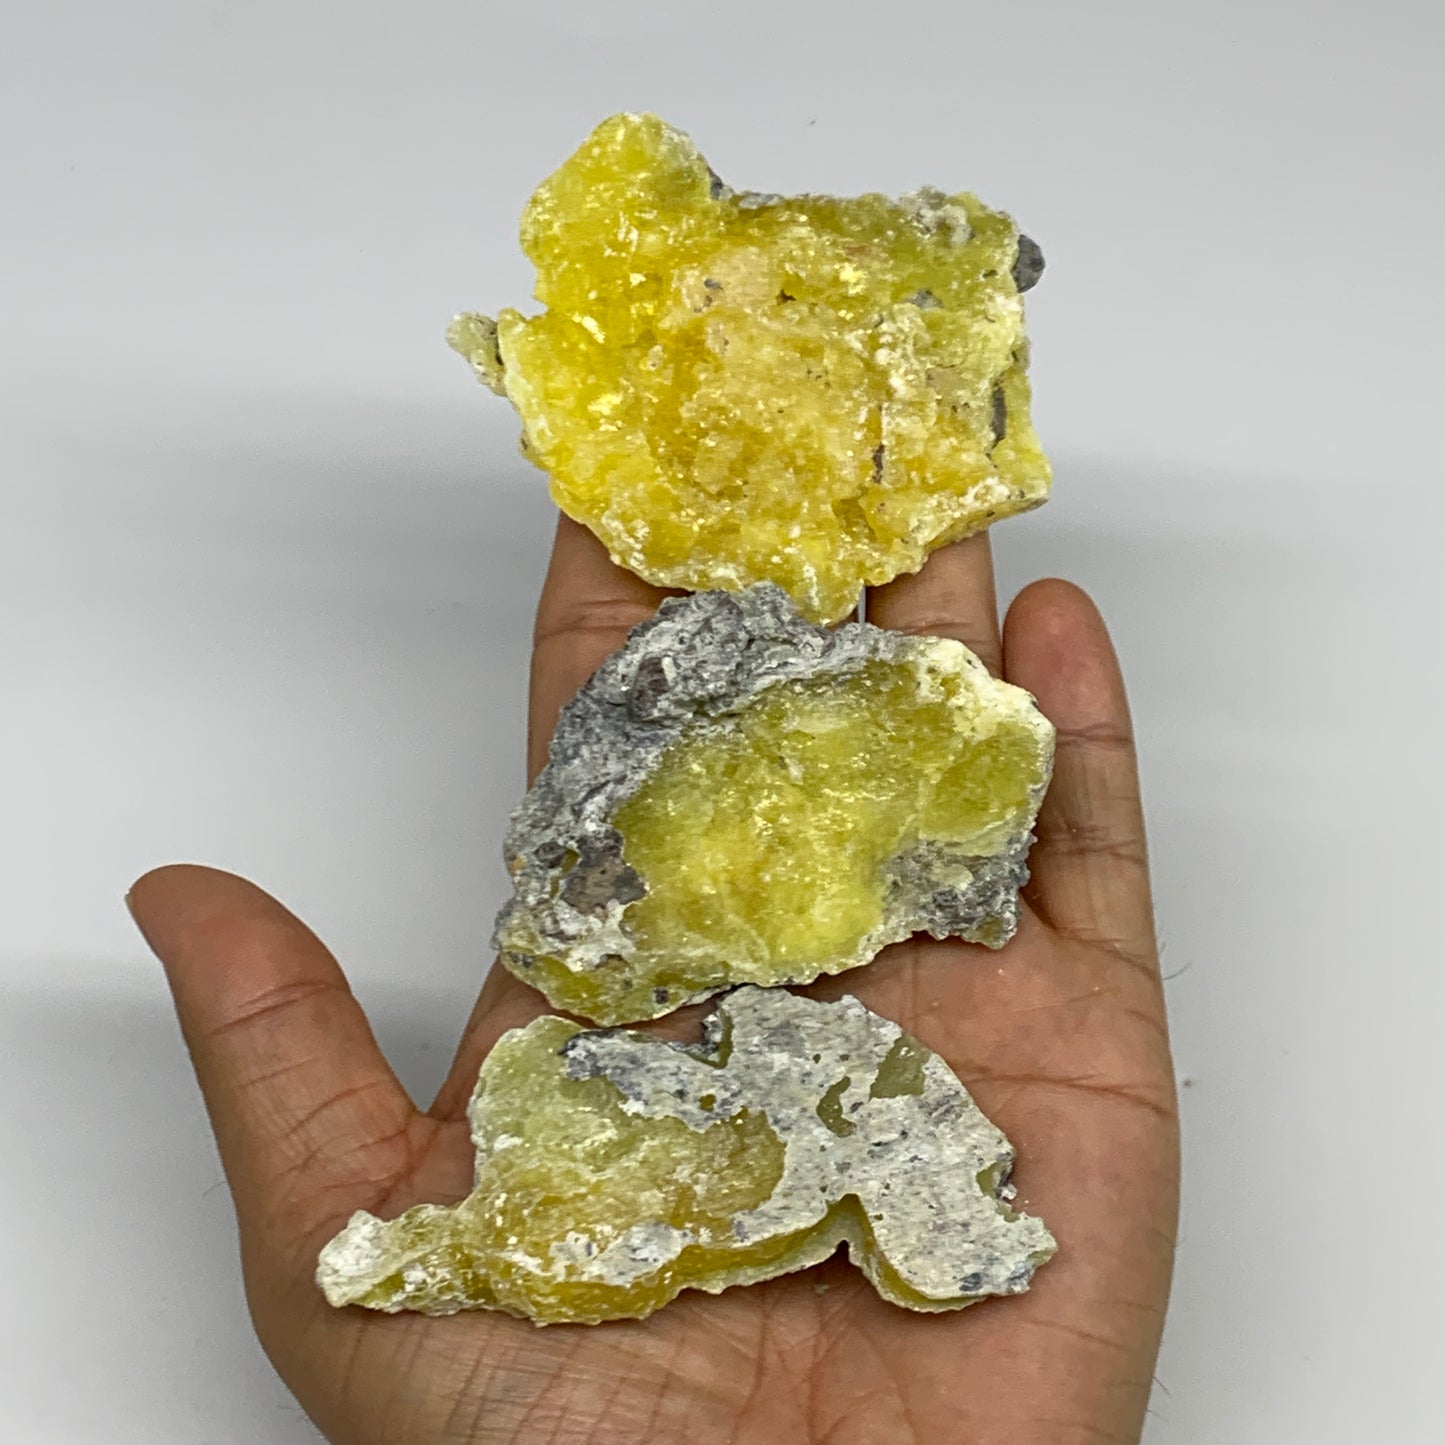 0.89 lbs, 2.1"-3.2", 12pcs, Brucite Crystal Minerals Specimens @Pakistan, B30153